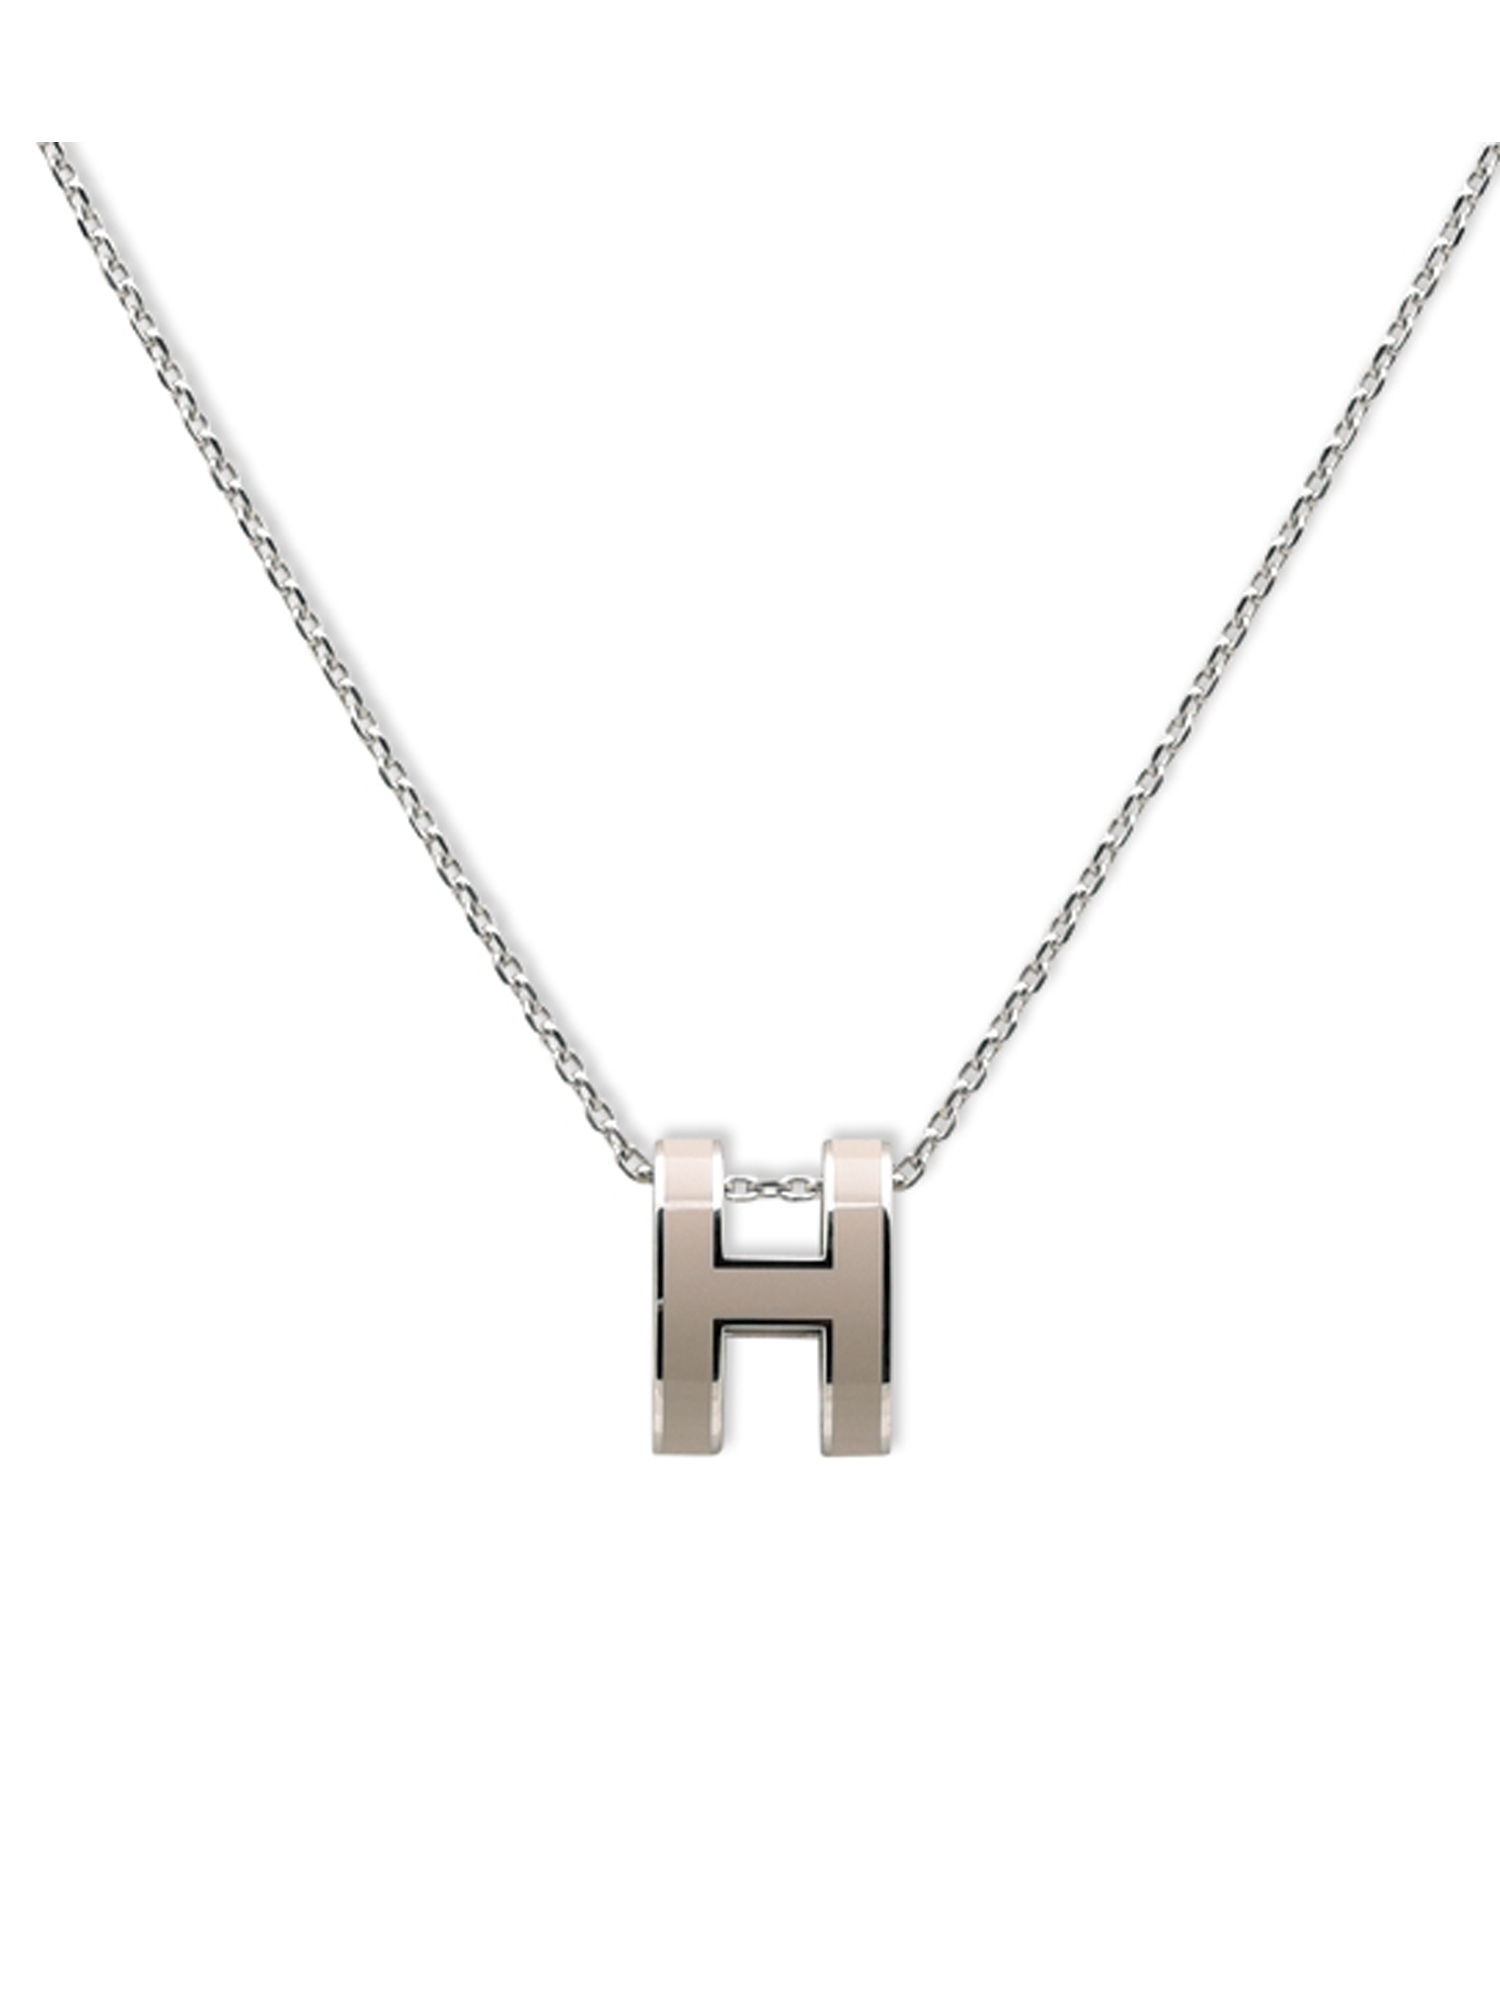 雙面用Cage H necklace 3400HKD 一條不議價... - We love Hermes | Facebook